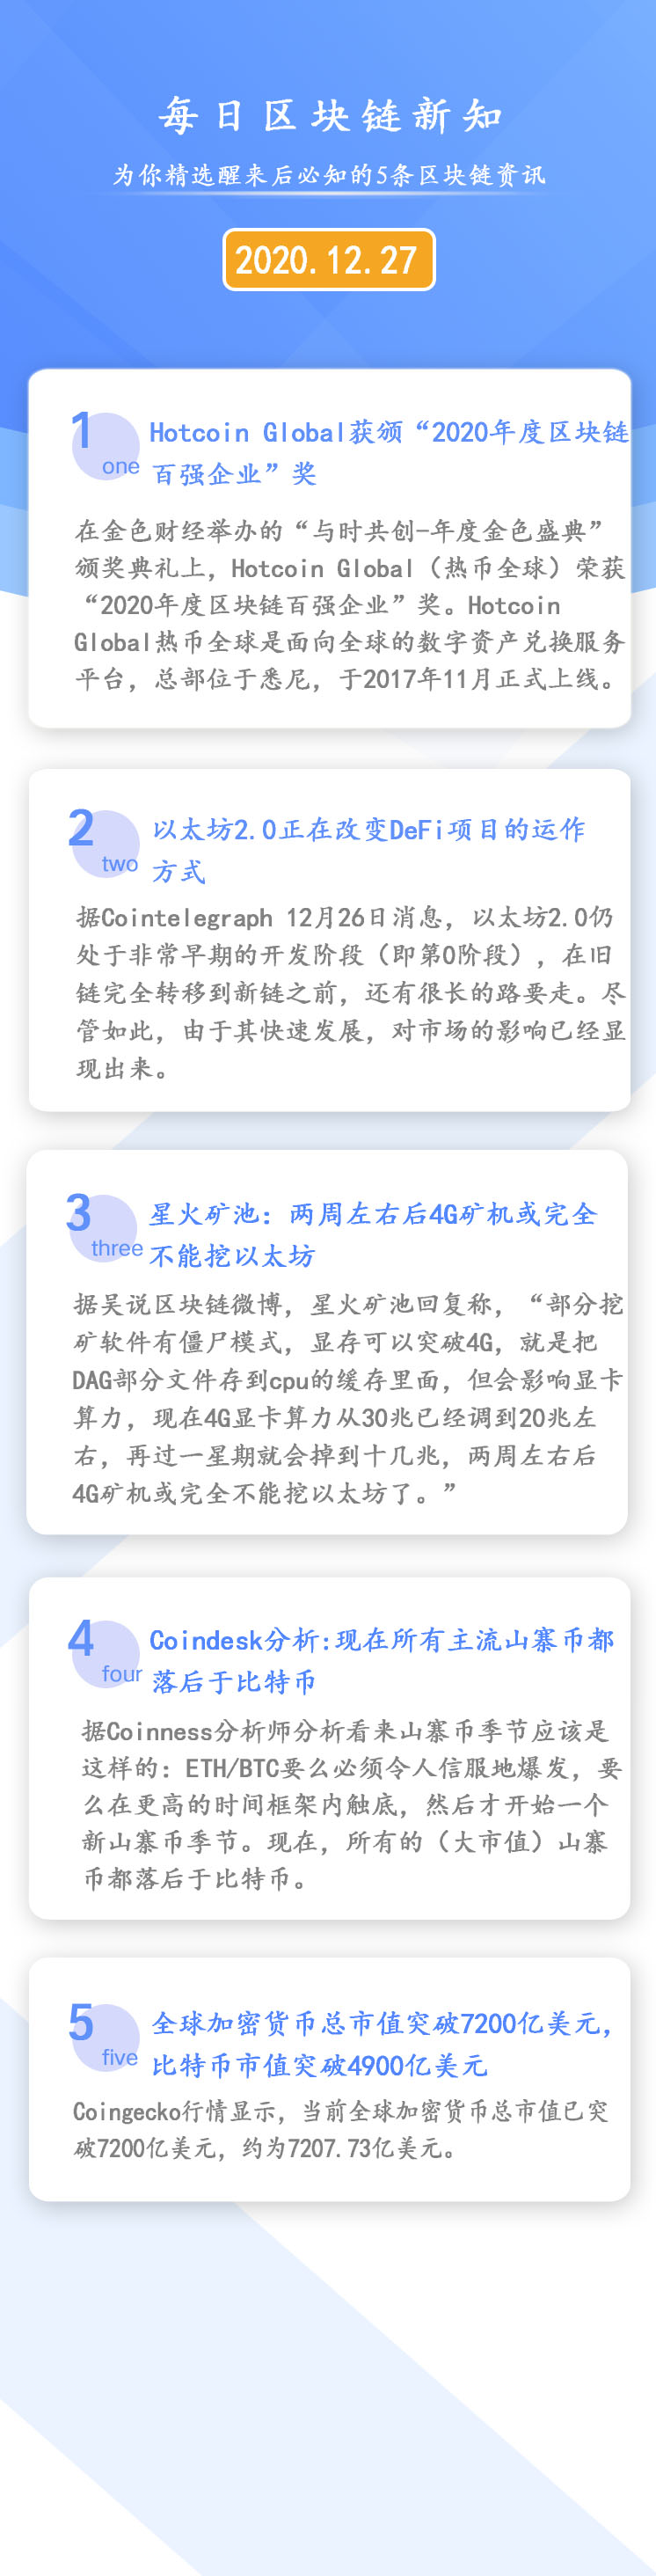 sitetuoluocaijing.cn 以太坊dag_以太坊dag计算器_以太坊dag问题